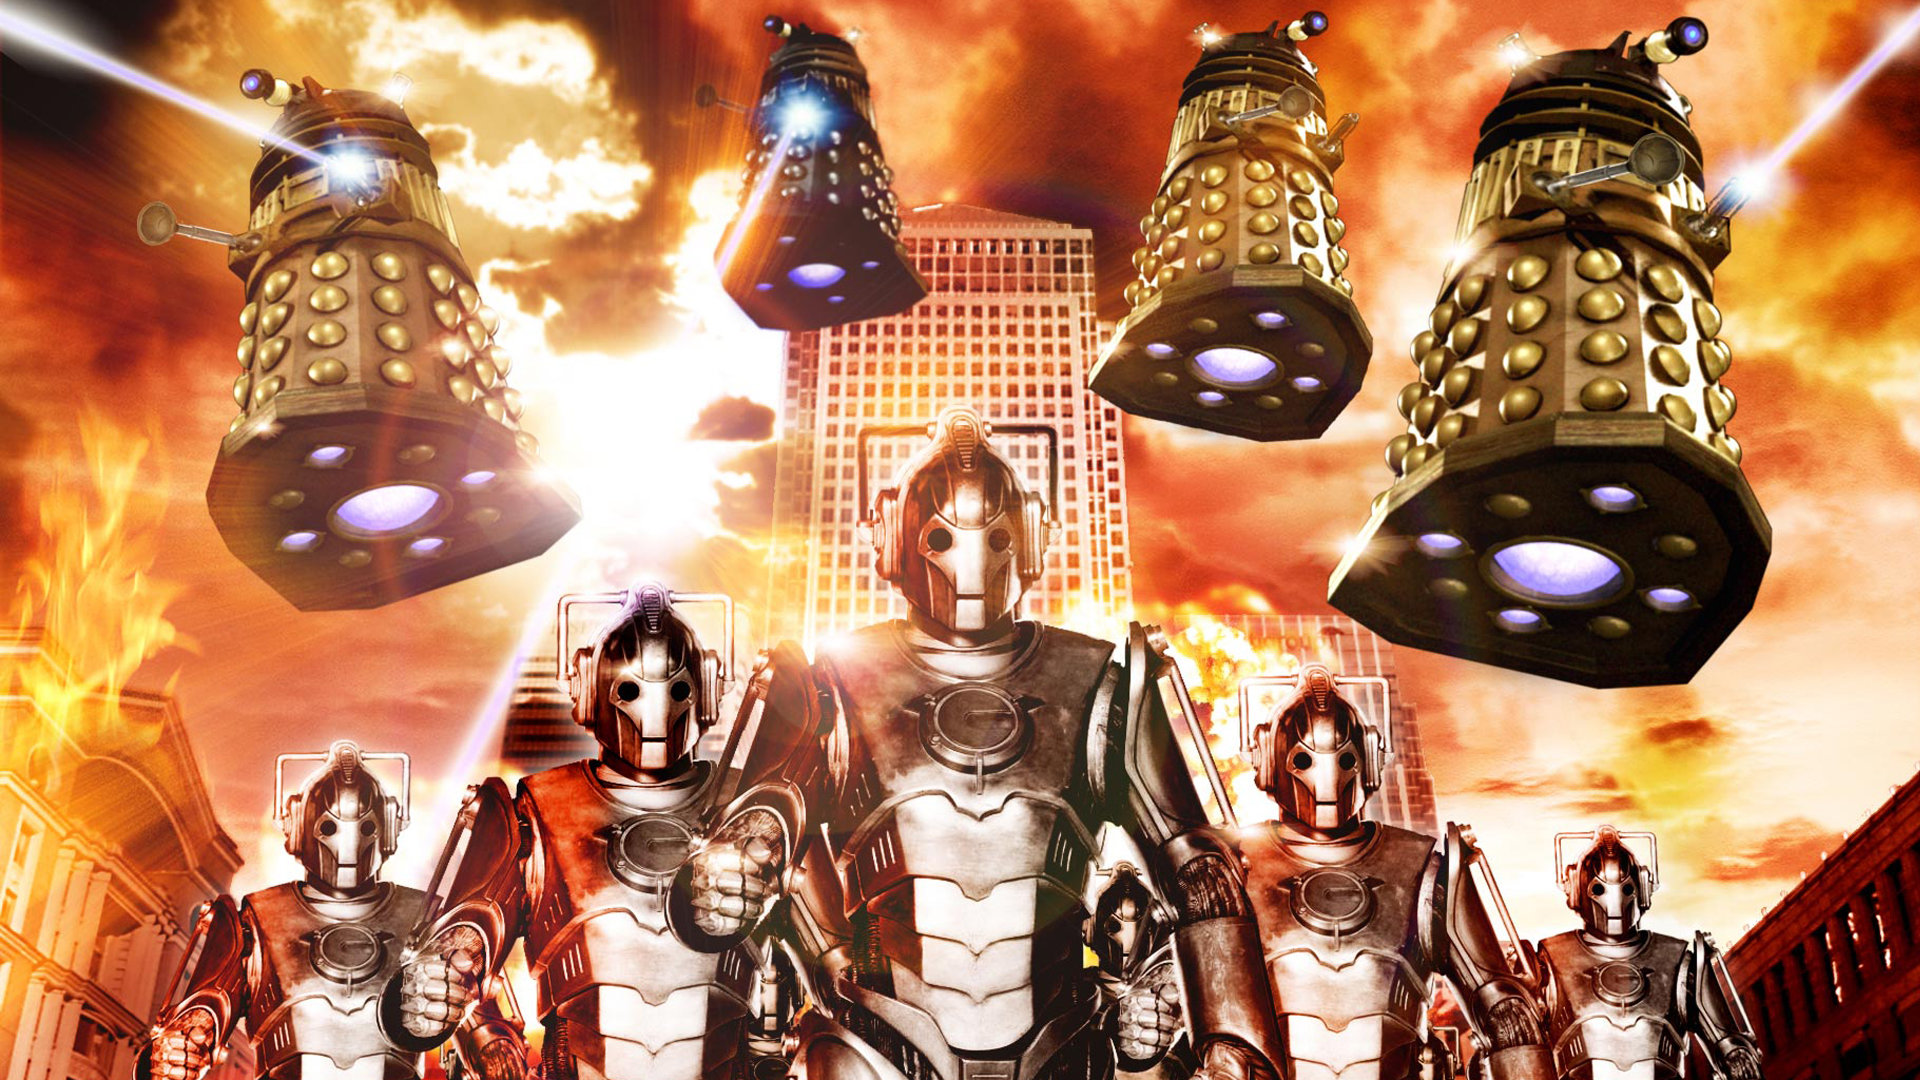 Best Dalek Wallpaper Id - Doctor Who Cyberman And Dalek - HD Wallpaper 